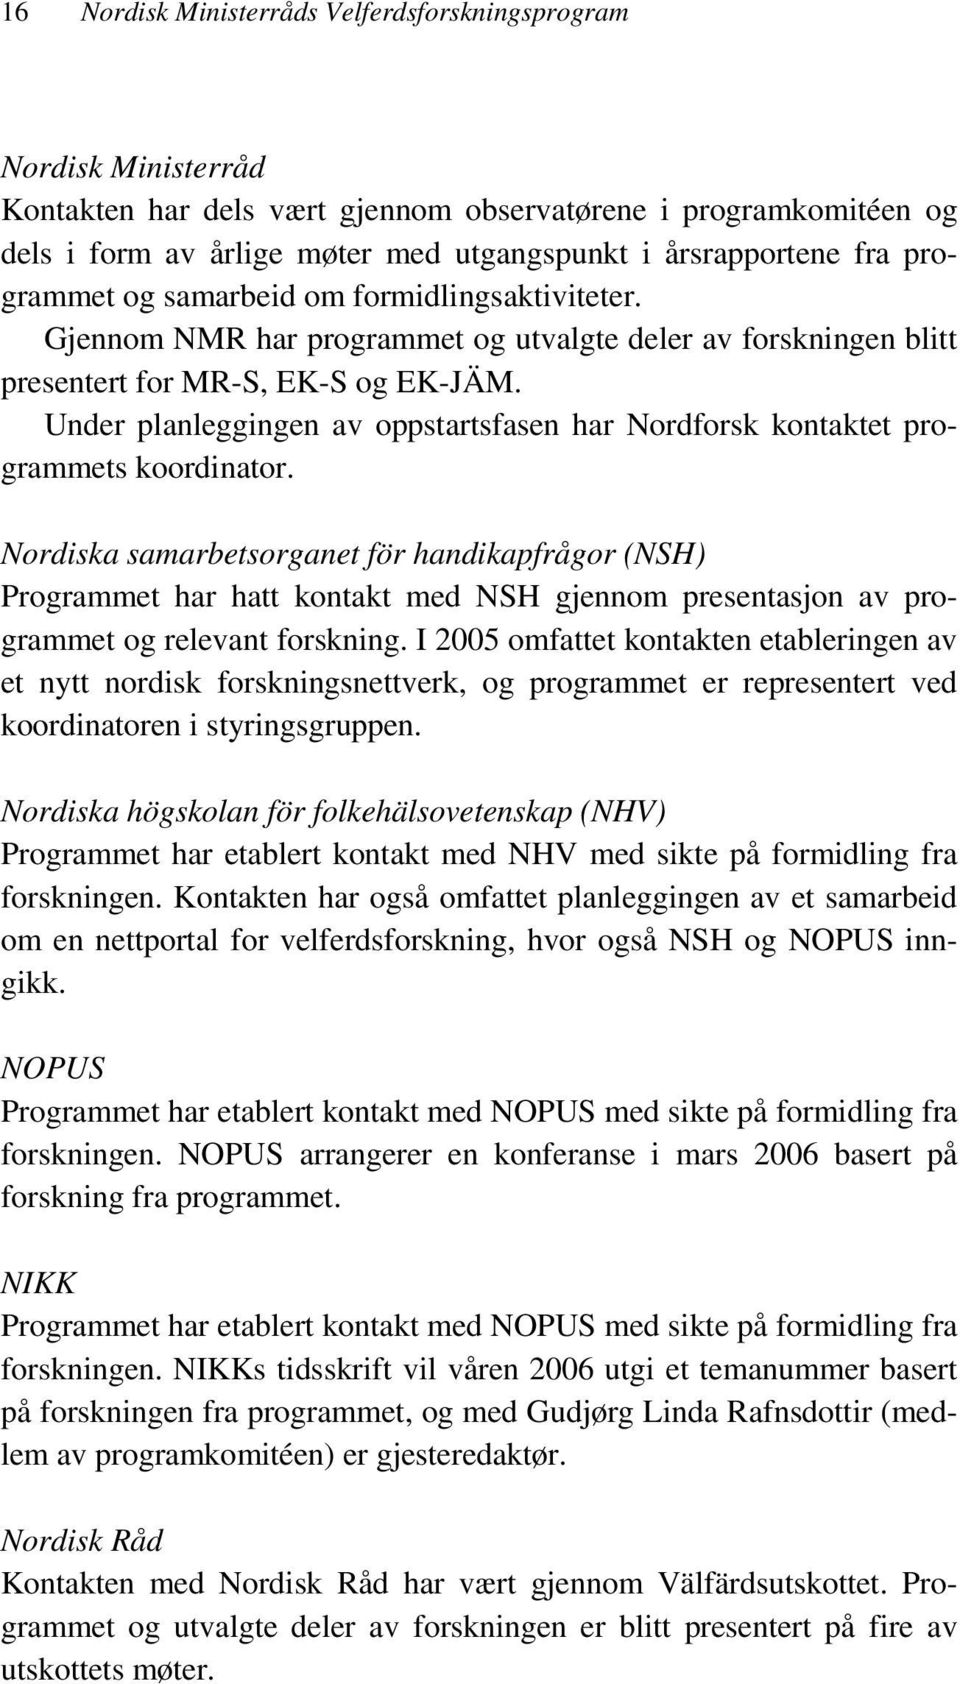 Under planleggingen av oppstartsfasen har Nordforsk kontaktet programmets koordinator.